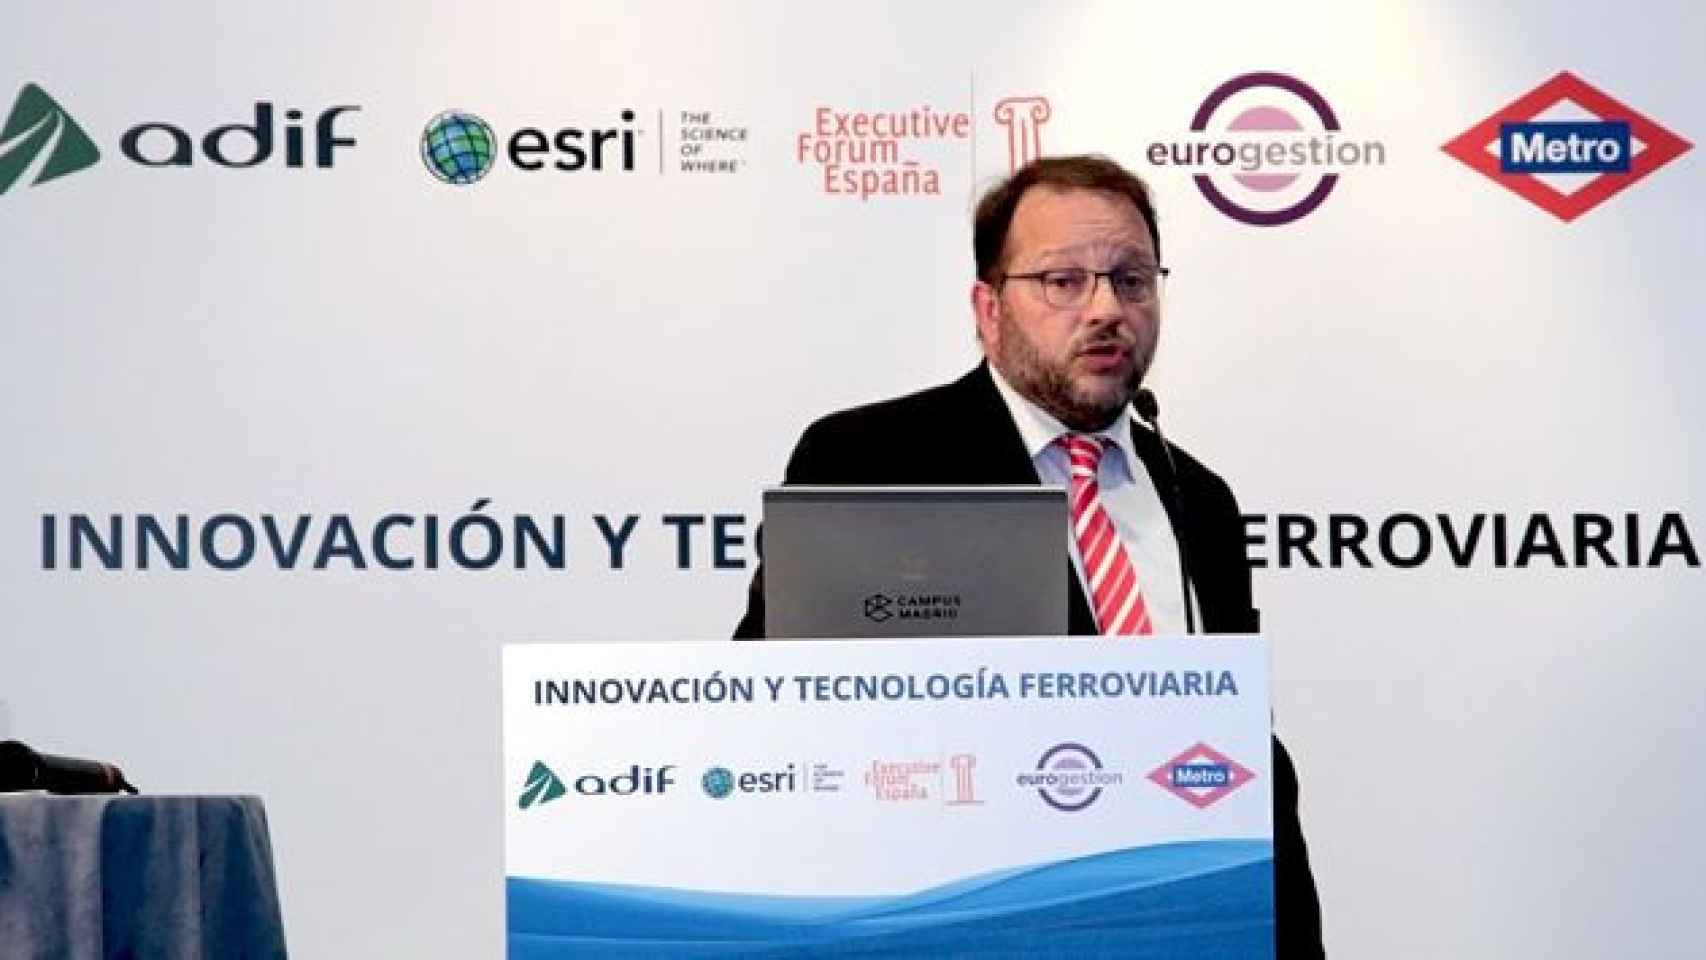 Juan Manuel Martínez Mourin, el ingeniero técnico de telecomunicaciones que ha presentado una demanda para anular el proceso electoral en el COGITT / CG